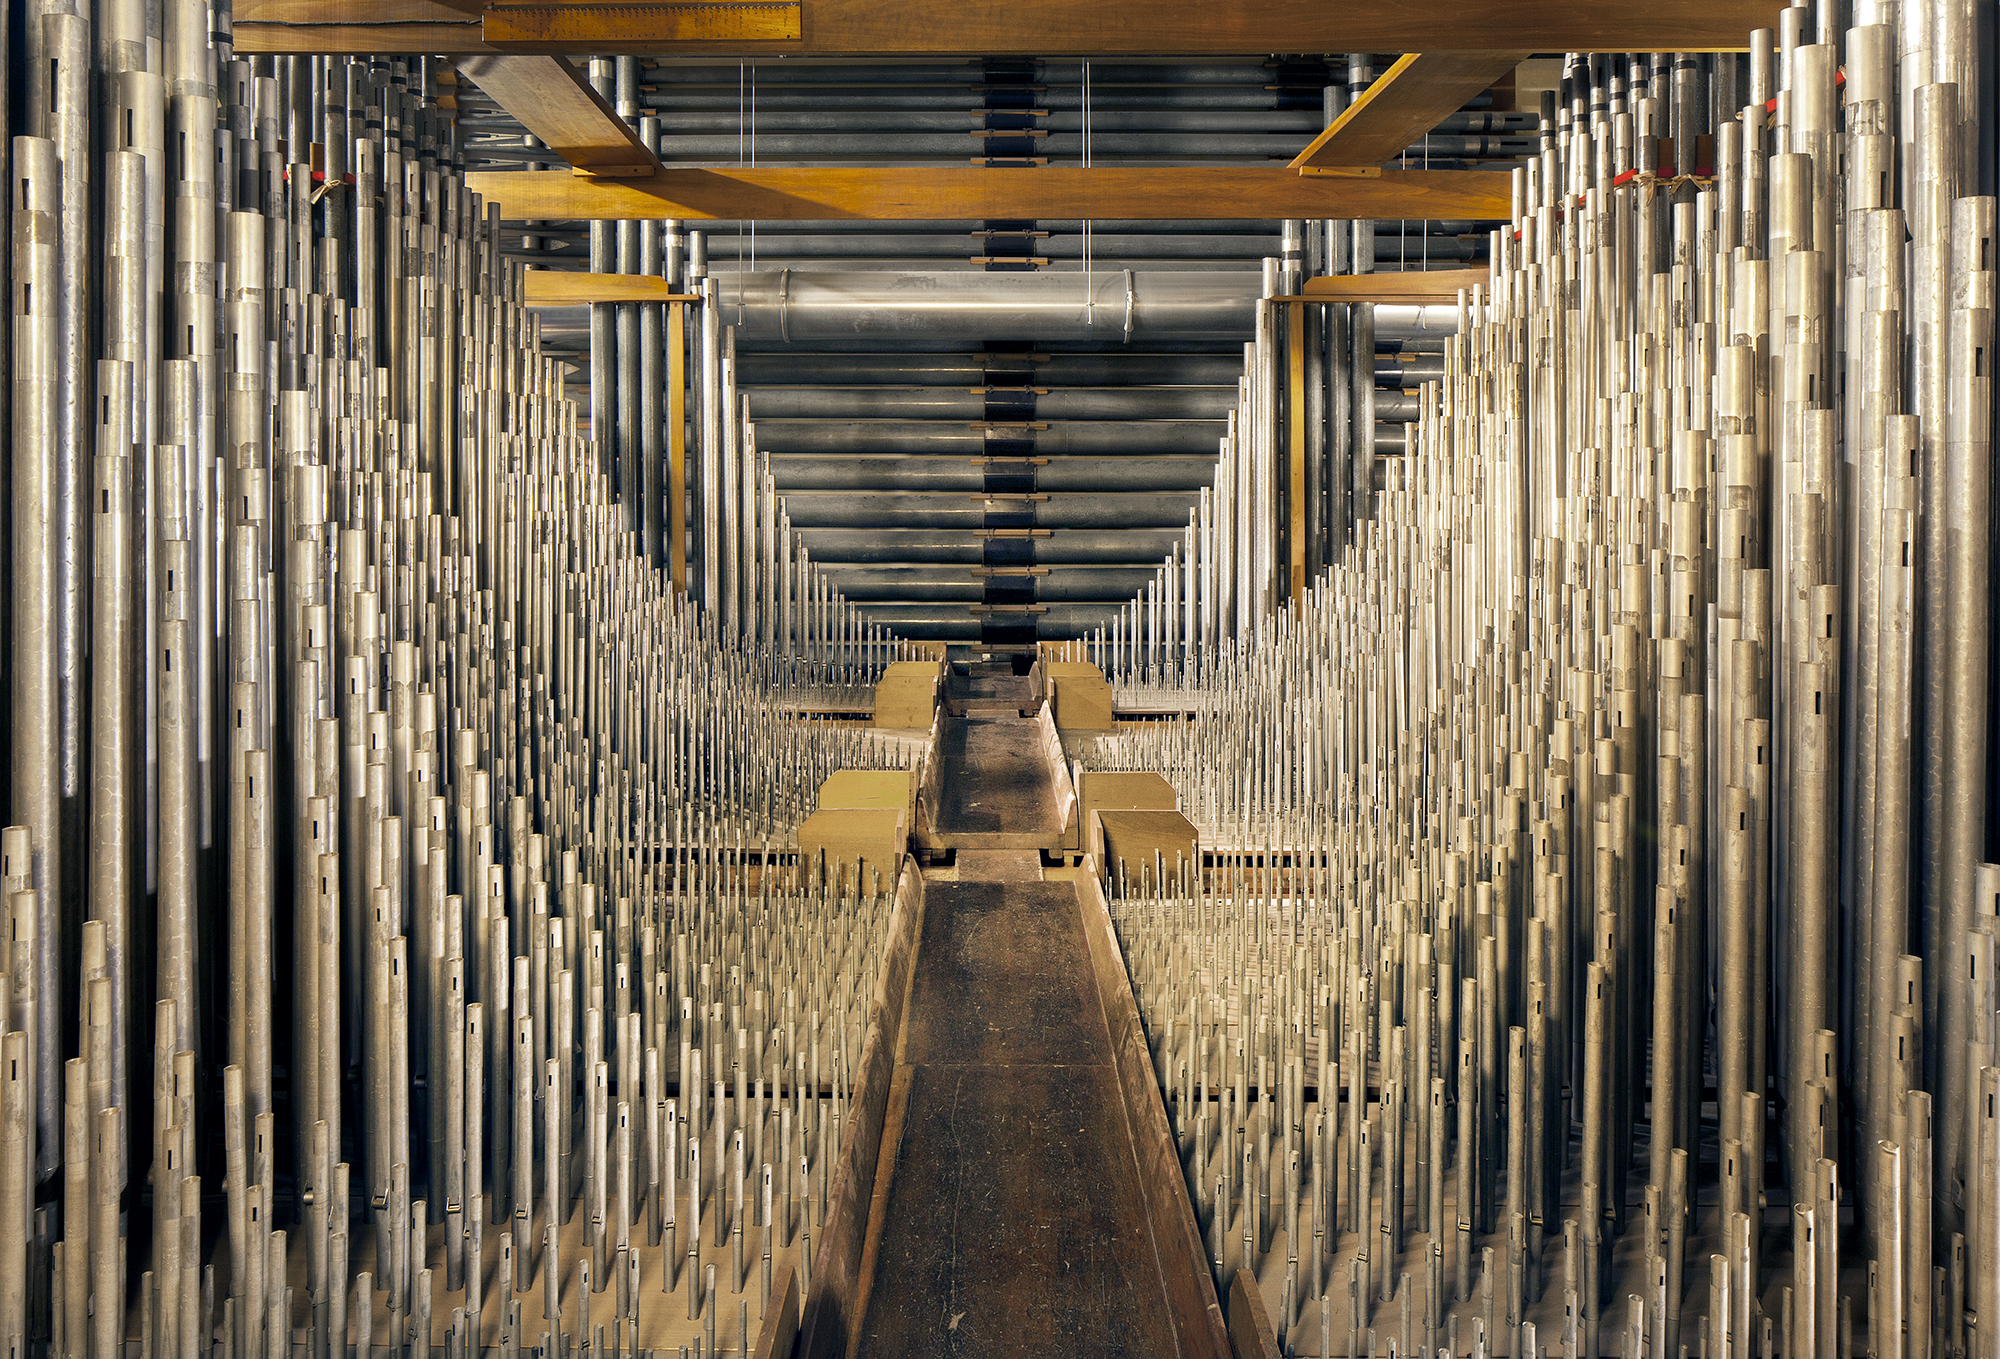 Wannamaker organ pipe chamber. (Joseph E.B. Elliott/Philadelphia: Finding the Hidden City)